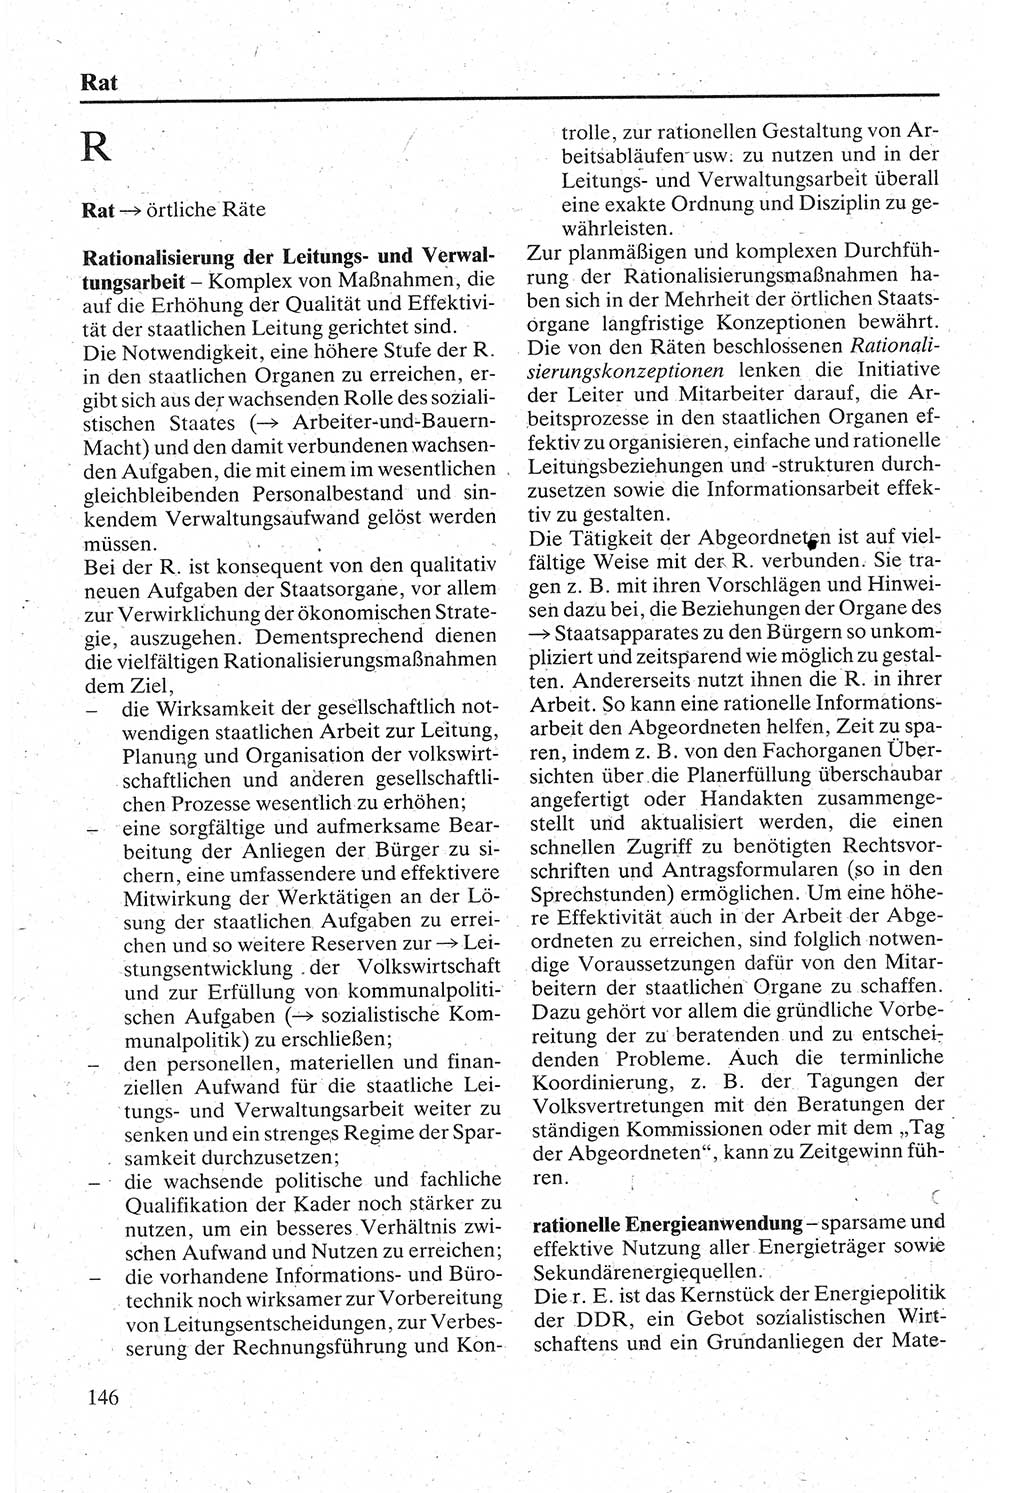 Handbuch für den Abgeordneten [Deutsche Demokratische Republik (DDR)] 1984, Seite 146 (Hb. Abg. DDR 1984, S. 146)